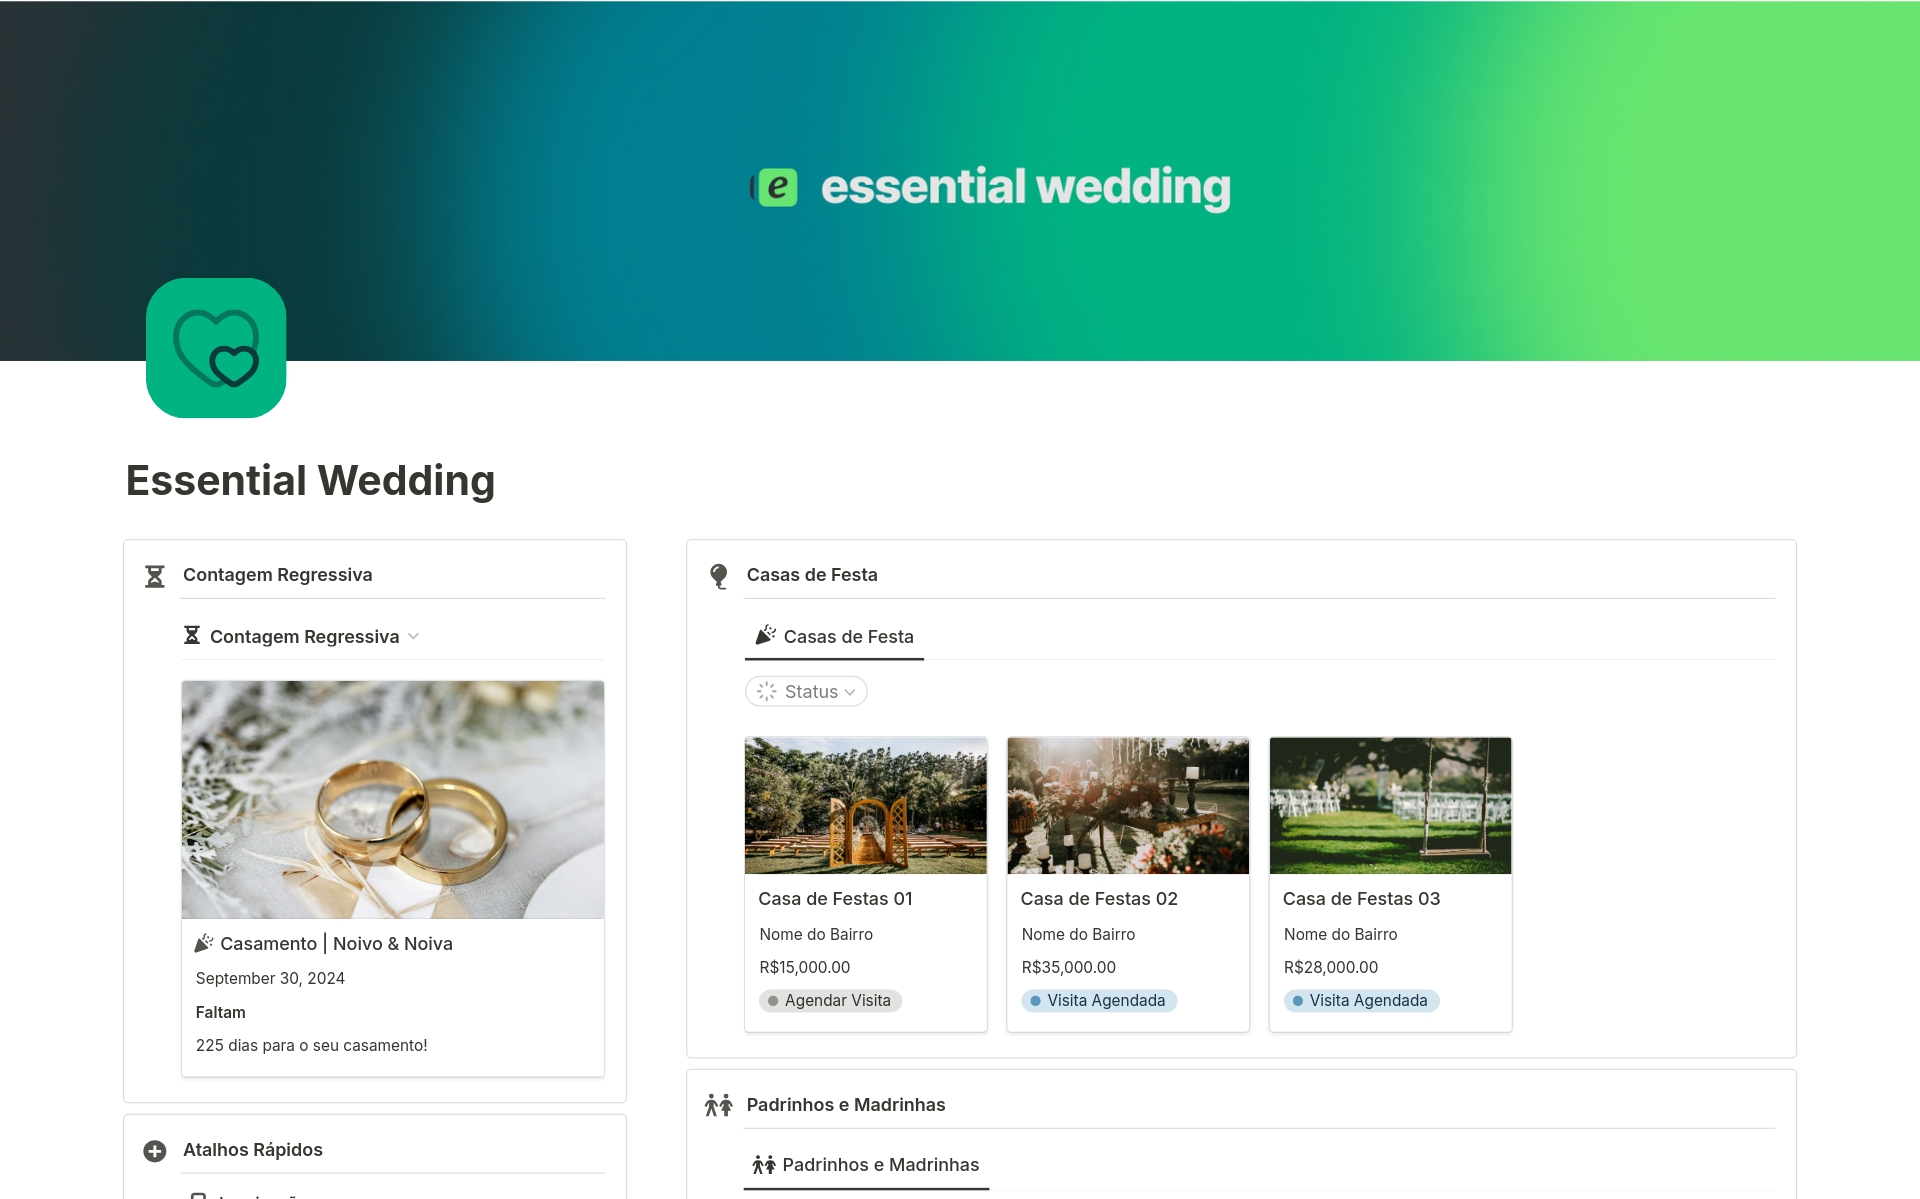 Eine Vorlagenvorschau für Essential Wedding - Organize seu casamento